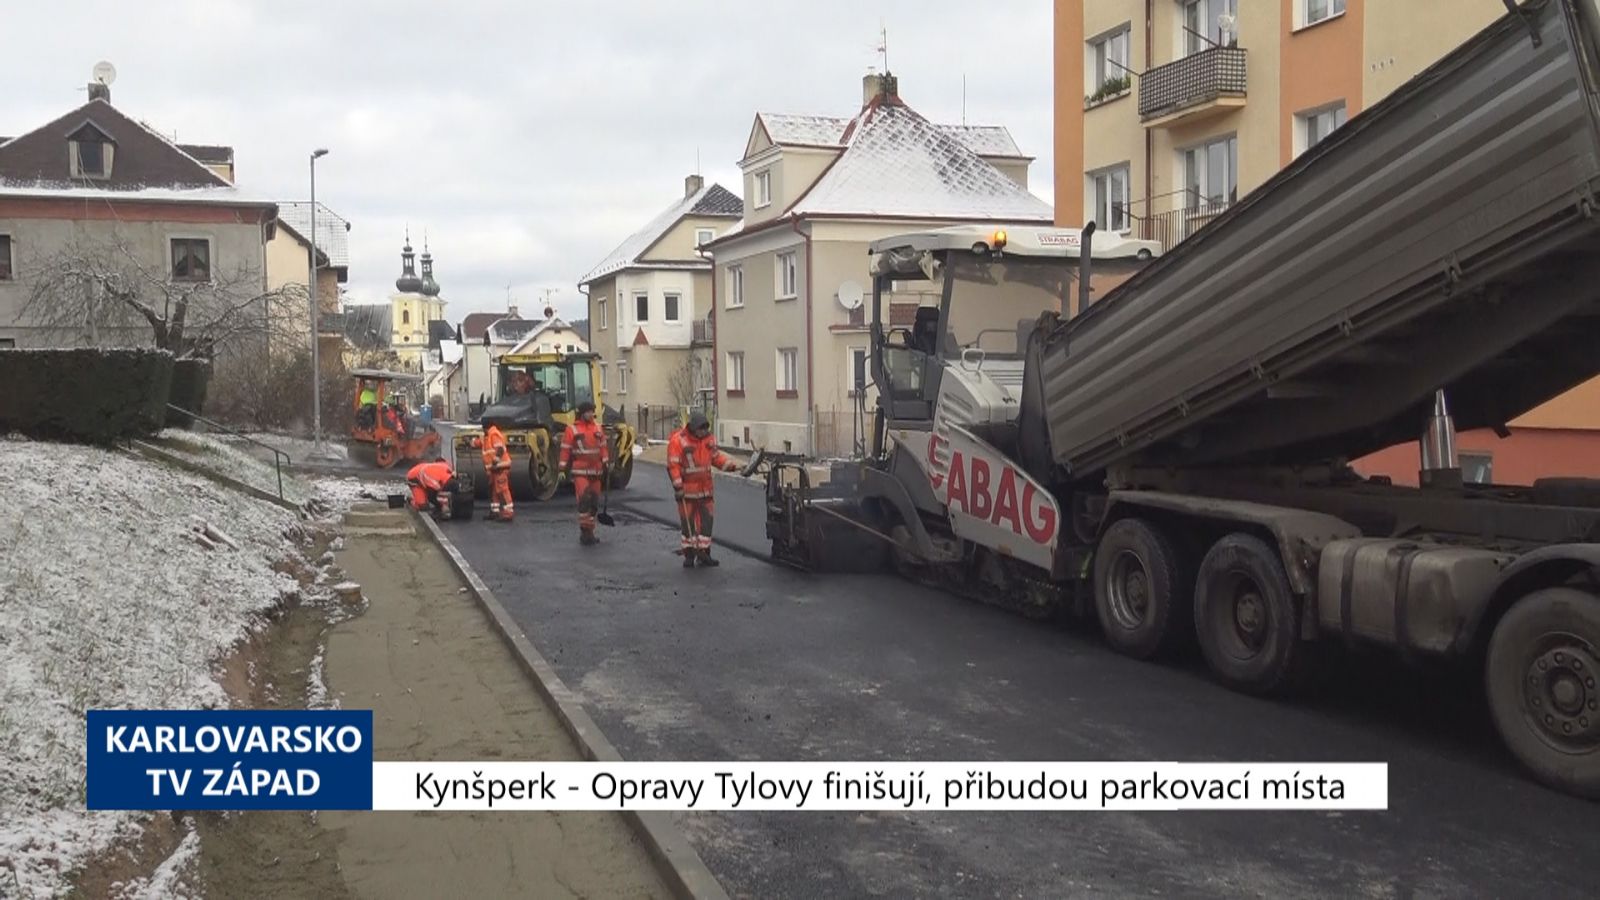 Kynšperk: Opravy Tylovy finišují, přibudou parkovací místa (TV Západ)